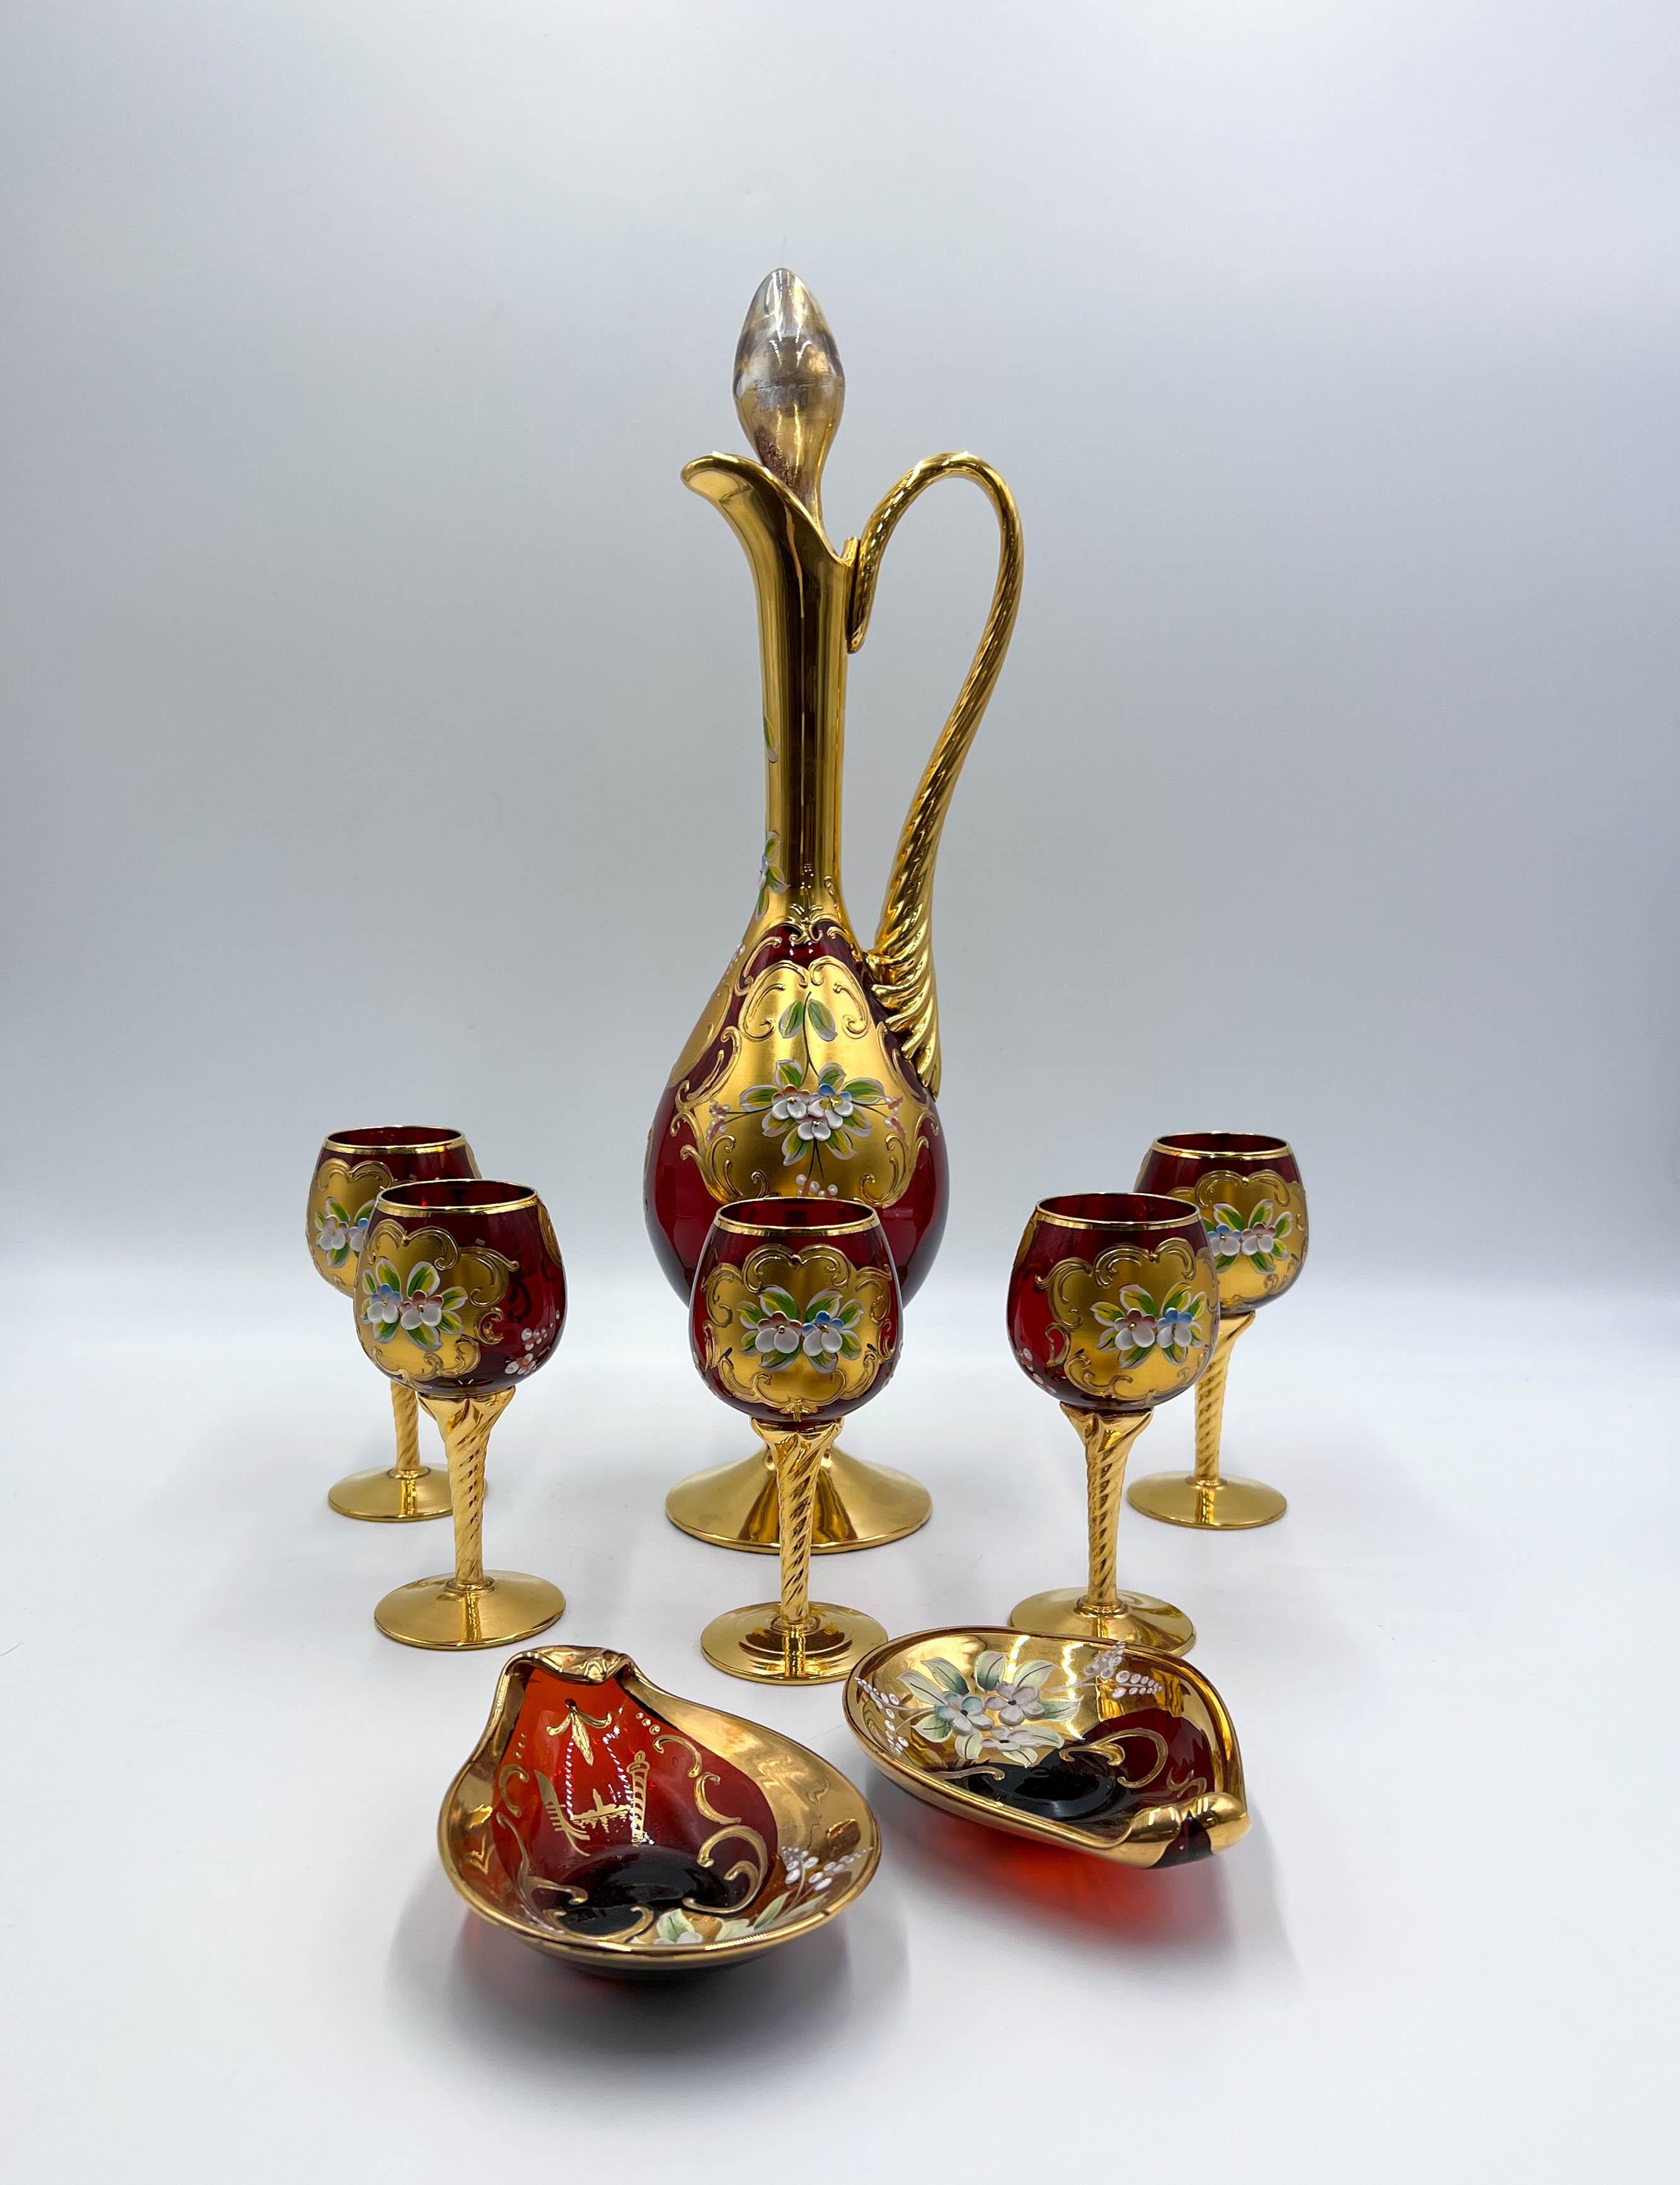 Cet ensemble de verres d'art italiens vénitiens soufflés à la bouche de Murano est un véritable témoignage de l'art et du savoir-faire de l'ancienne tradition vénitienne. Cet ensemble exquis, fabriqué avec une attention méticuleuse aux détails, met